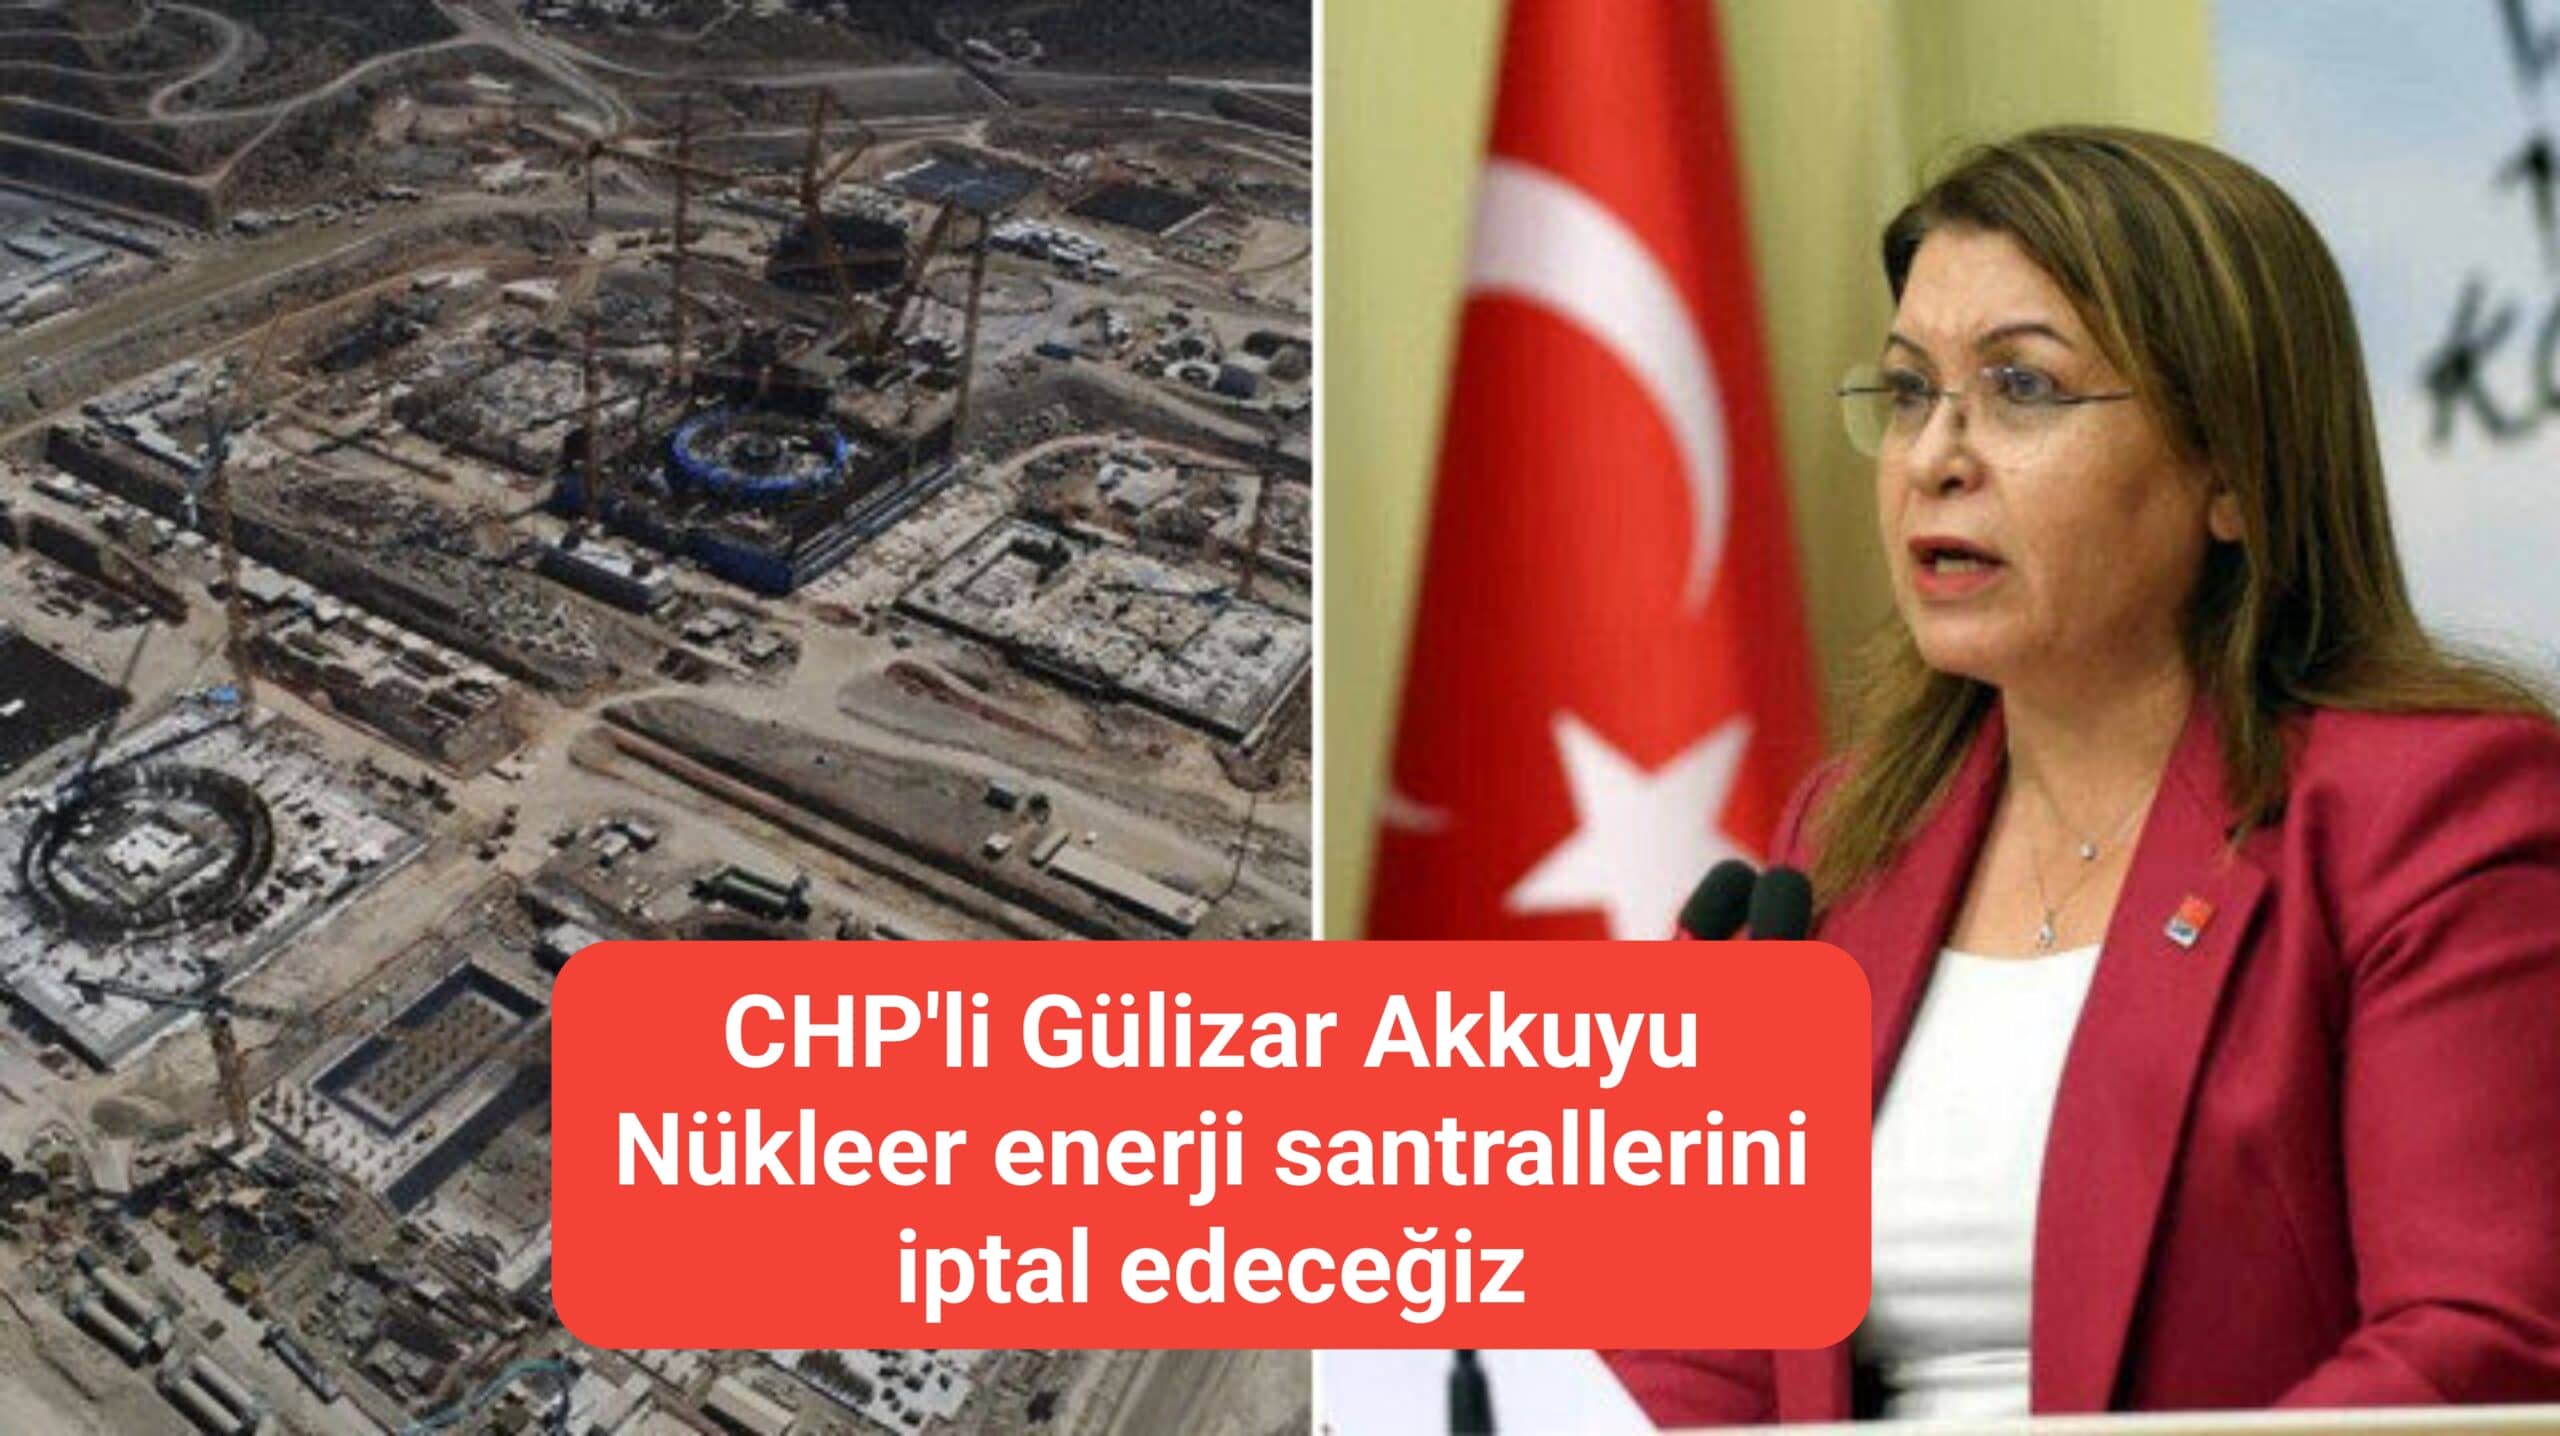 CHP'li Gülizar Akkuyu Nükleer enerji santrallerini iptal edeceğiz